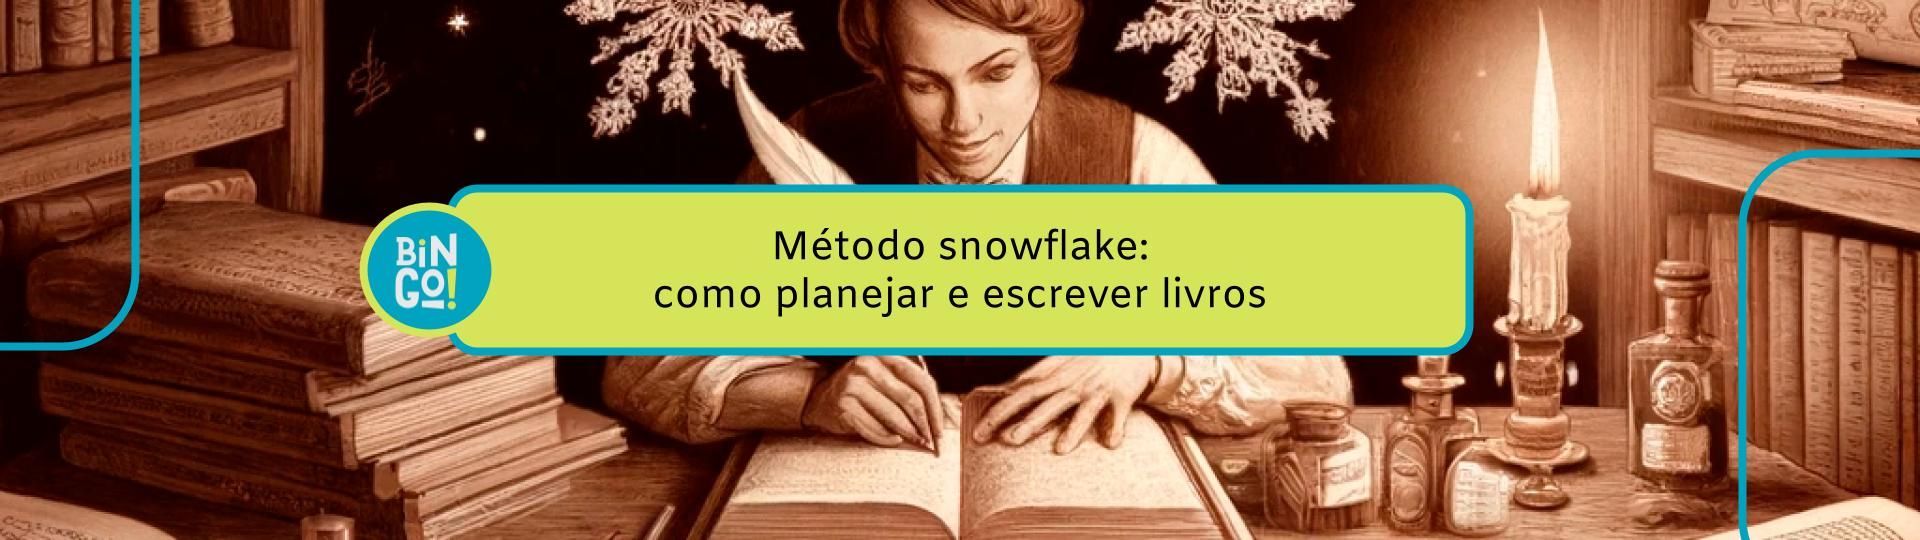 metodo-snowflake-como-planejar-e-escrever-livros